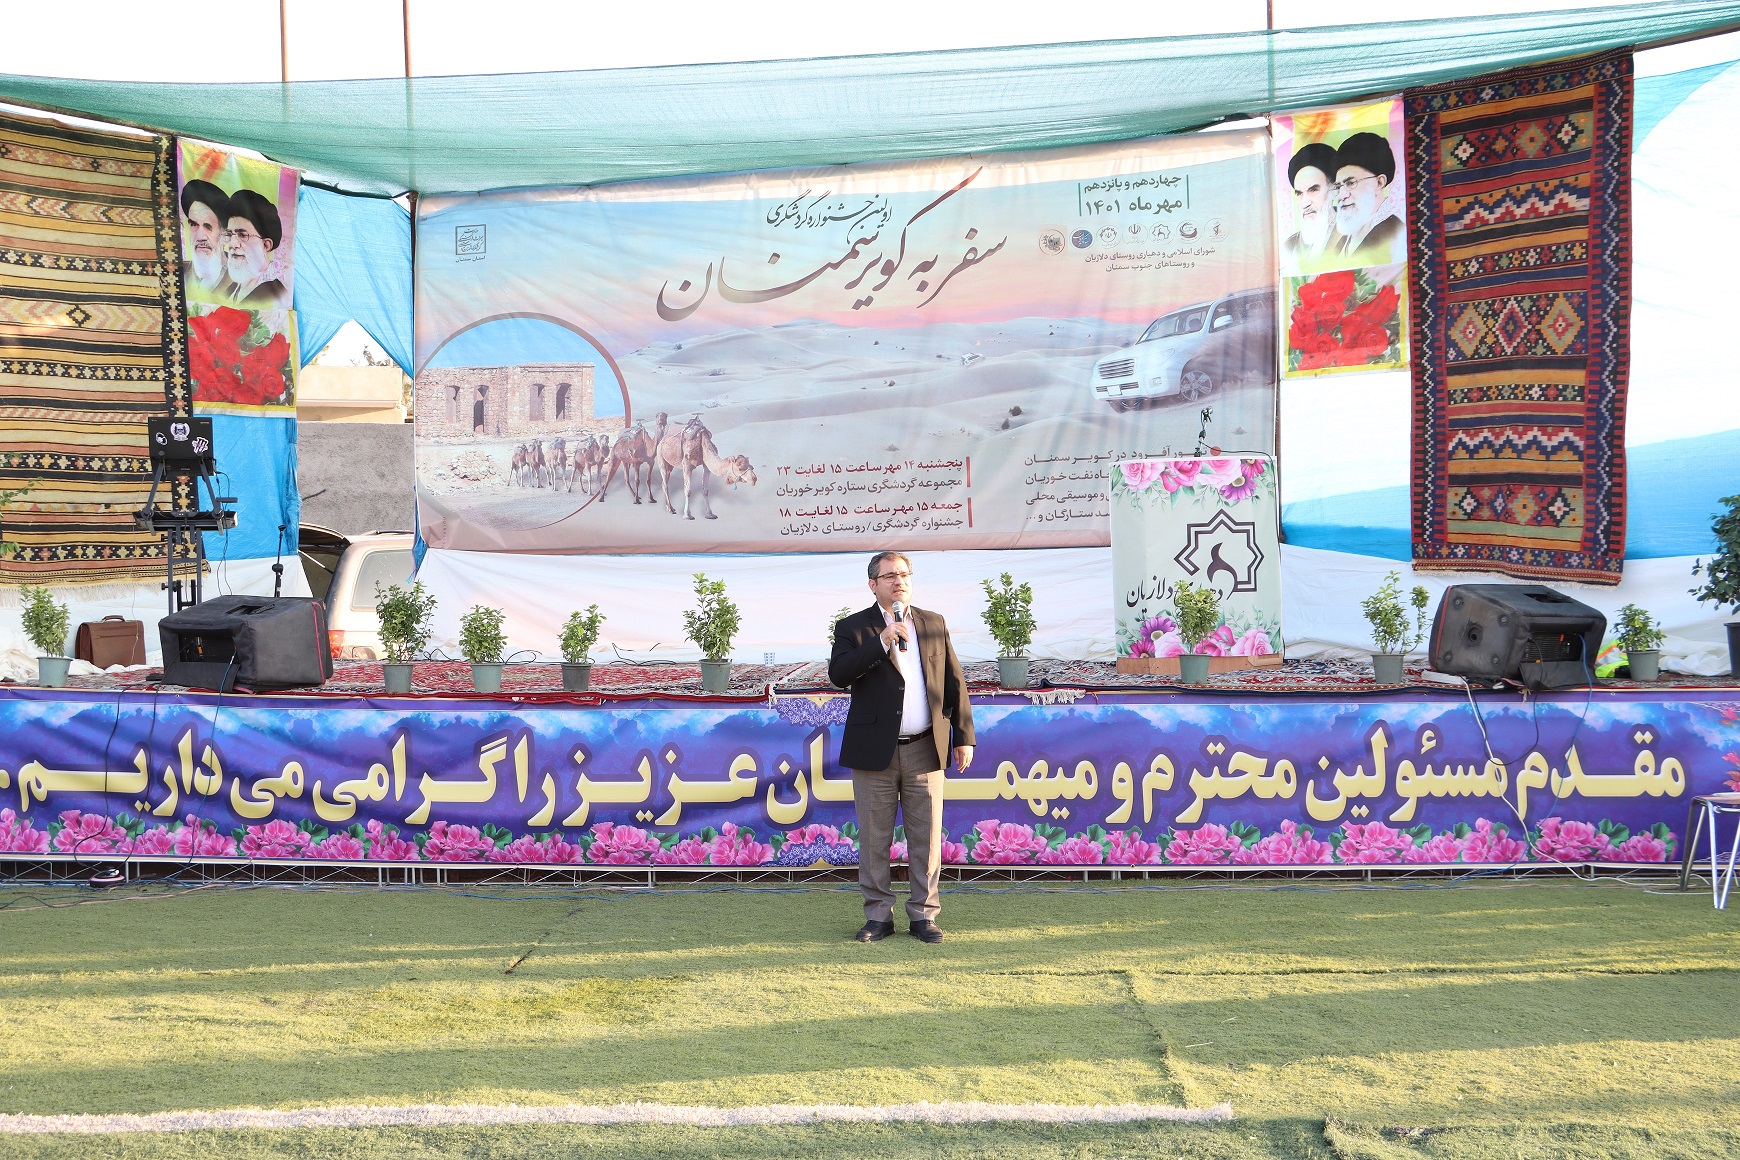 جشنواره گردشگری سفر به کویر سمنان در برندسازی ظرفیت کویر استان موثر است